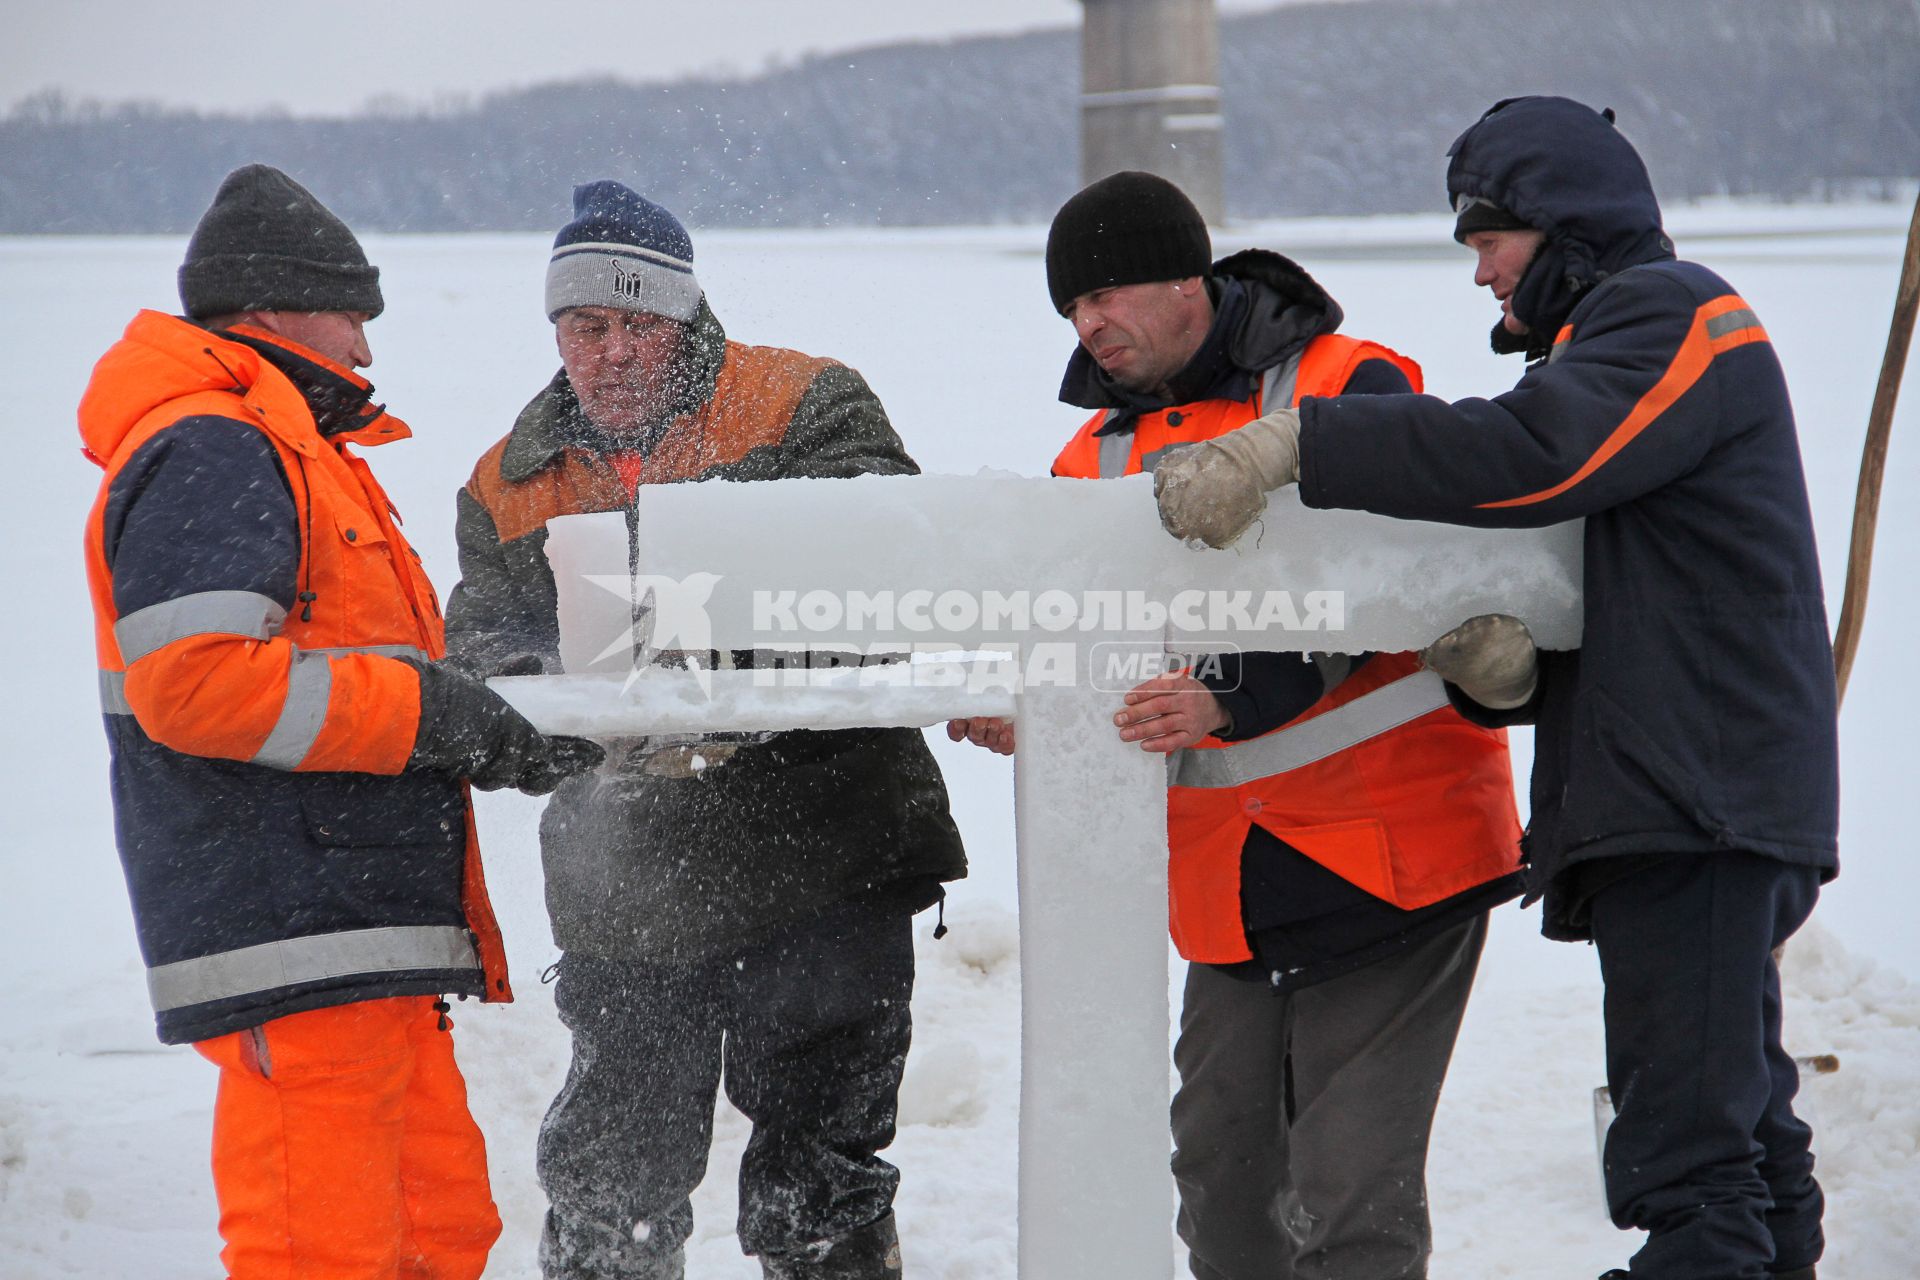 Подготовка к крещенским купаниям в Уфе. Рабочие устанавливают ледяной крест на месте купели в реке.